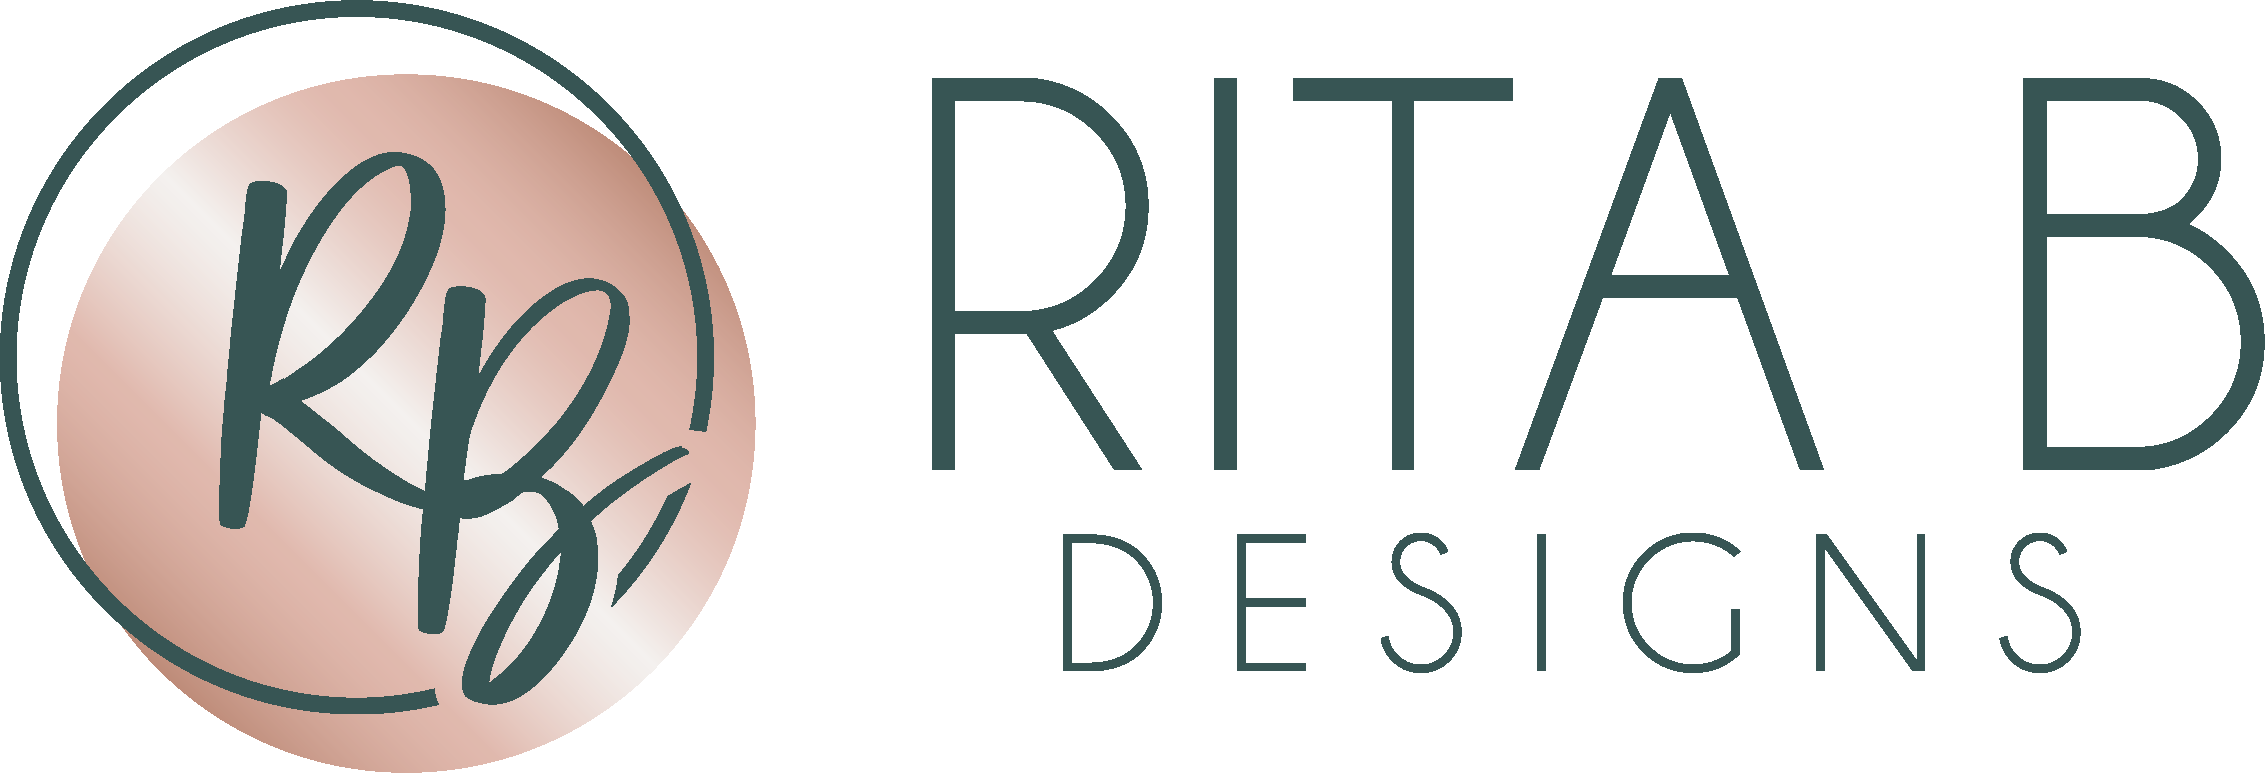 RitaB Designs